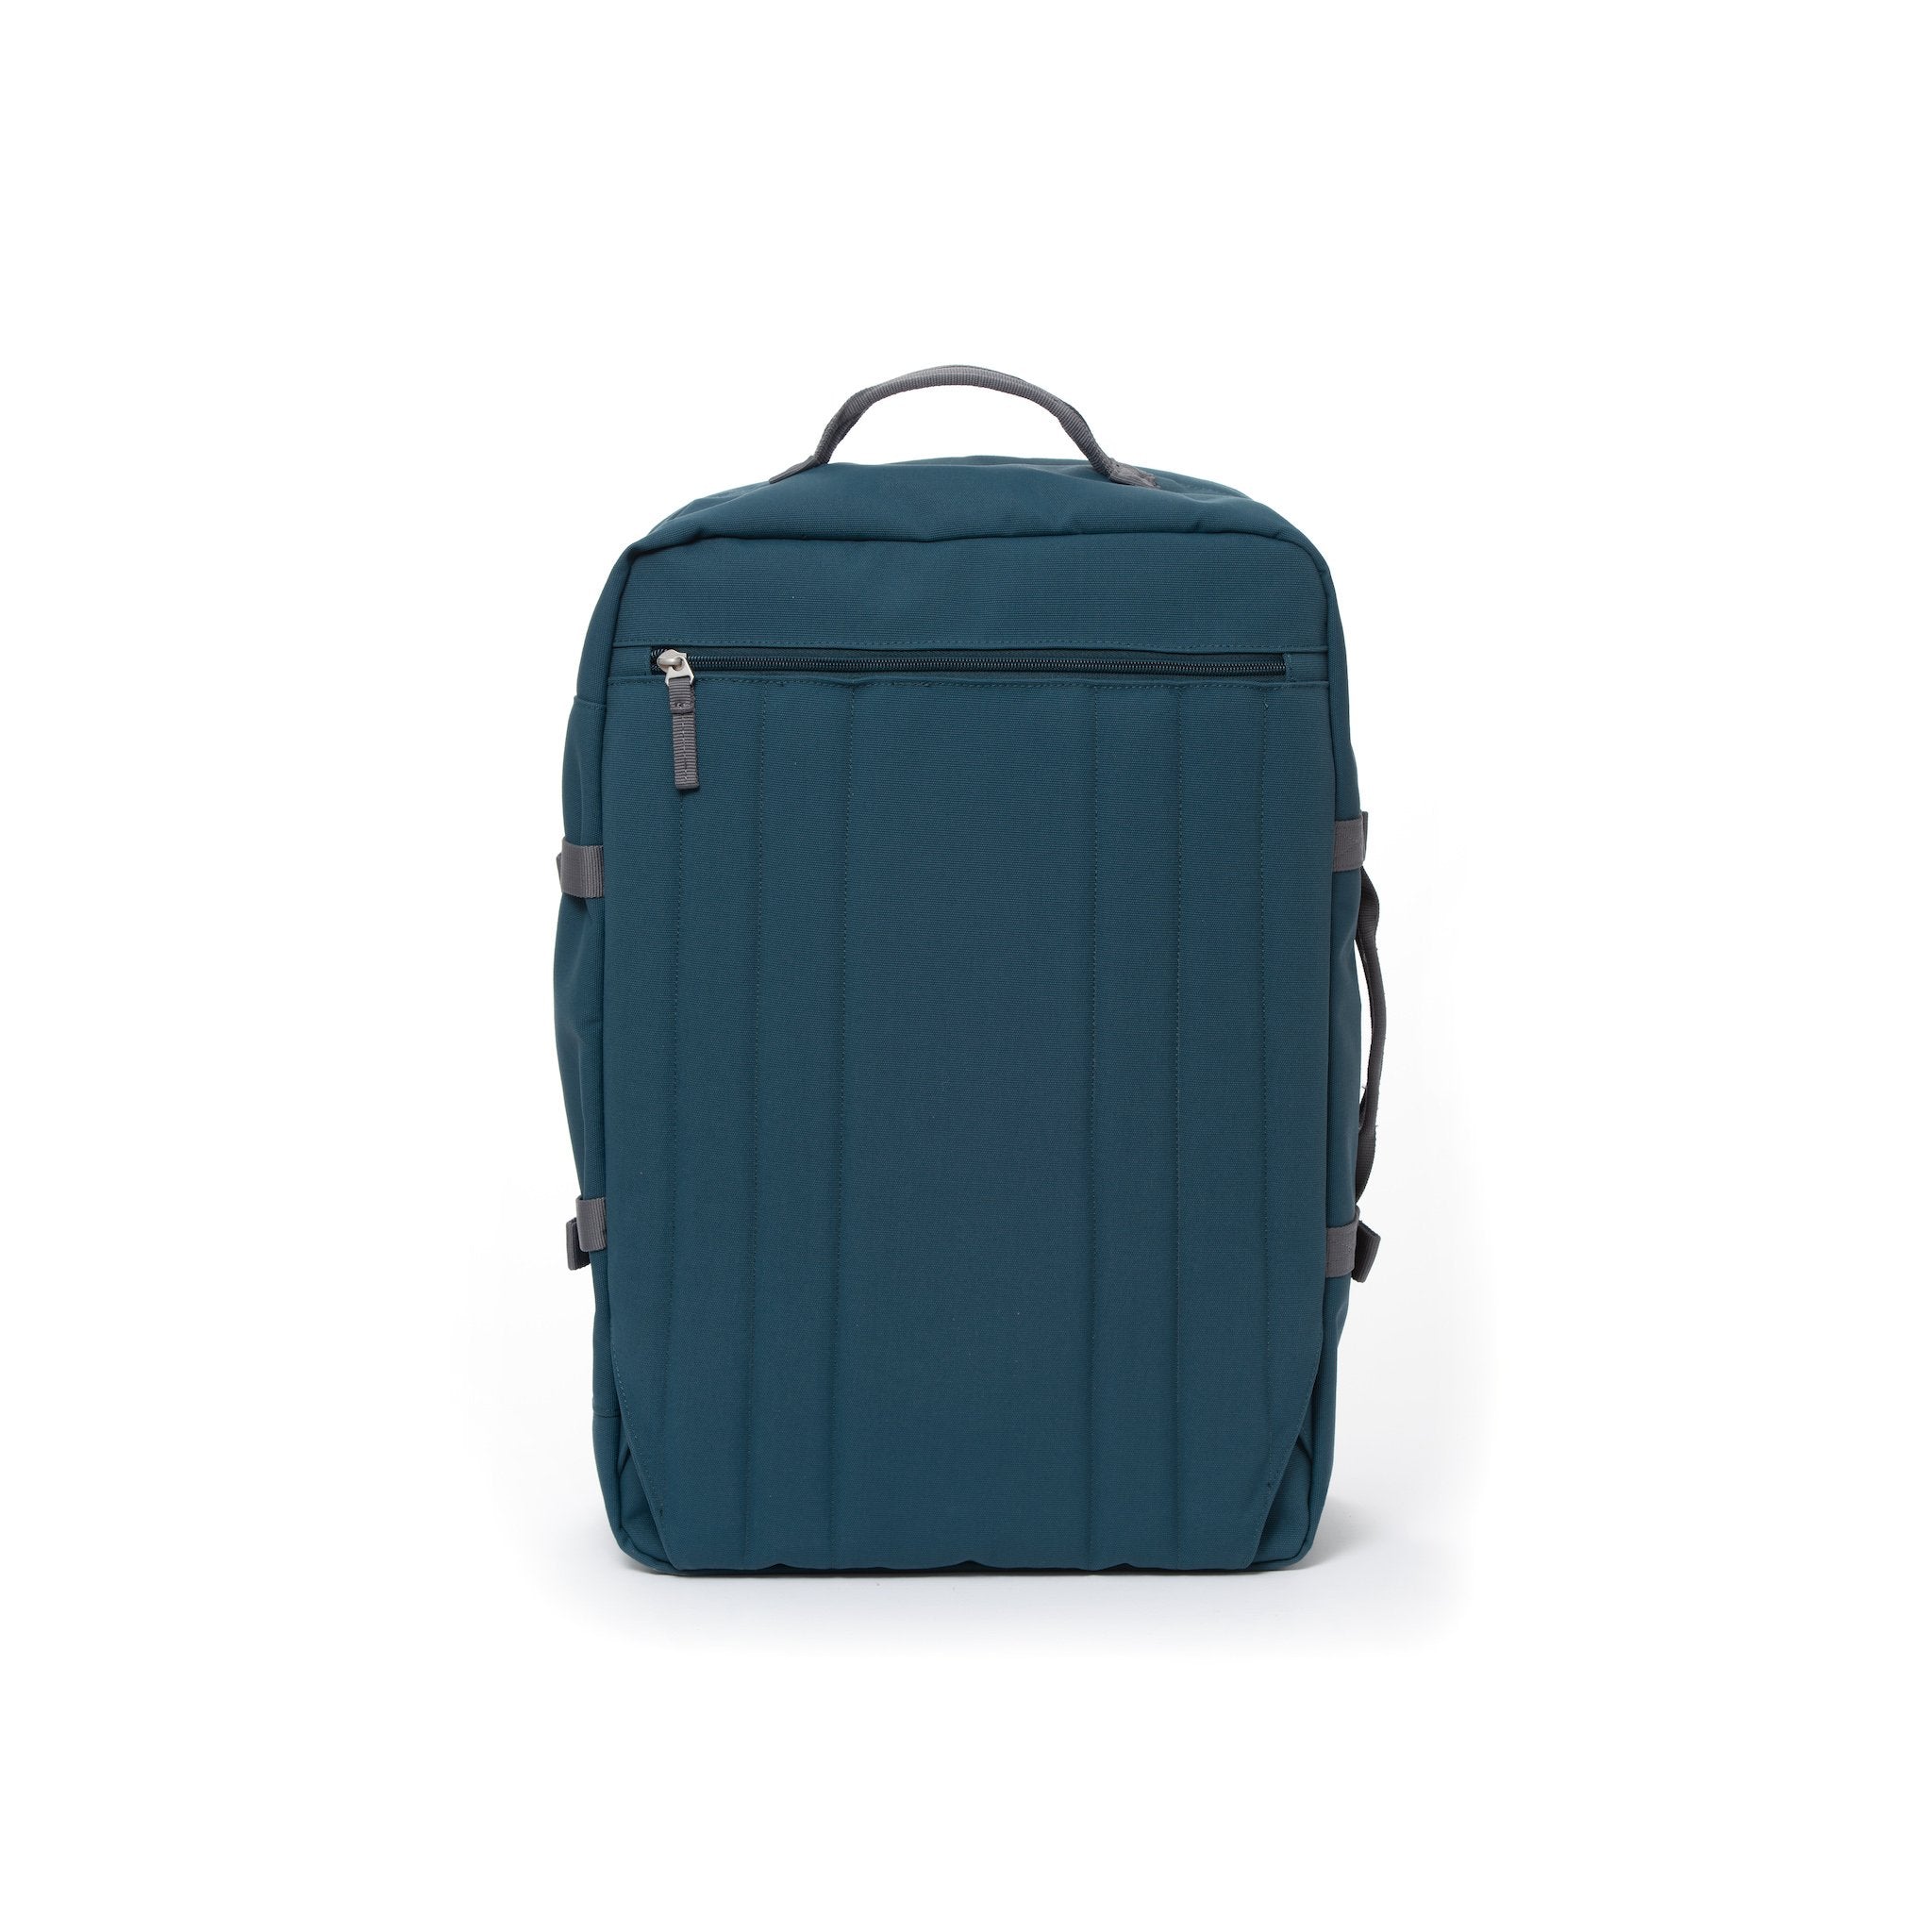 Blue travel backpack with hidden shoulder straps.